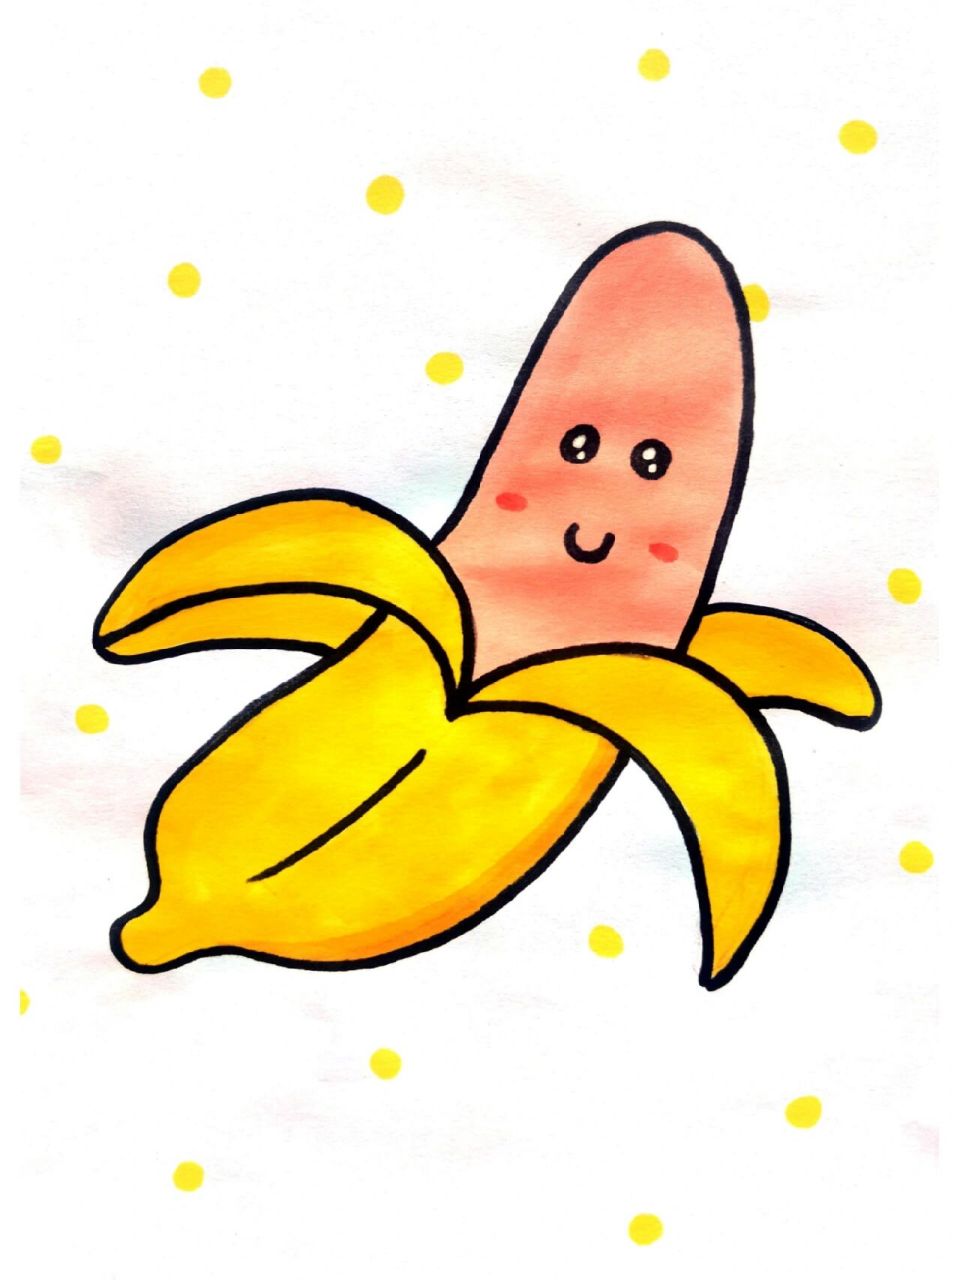 水果简笔画 香蕉简笔画,水果简笔画,收藏起来留给孩子画吧超简单